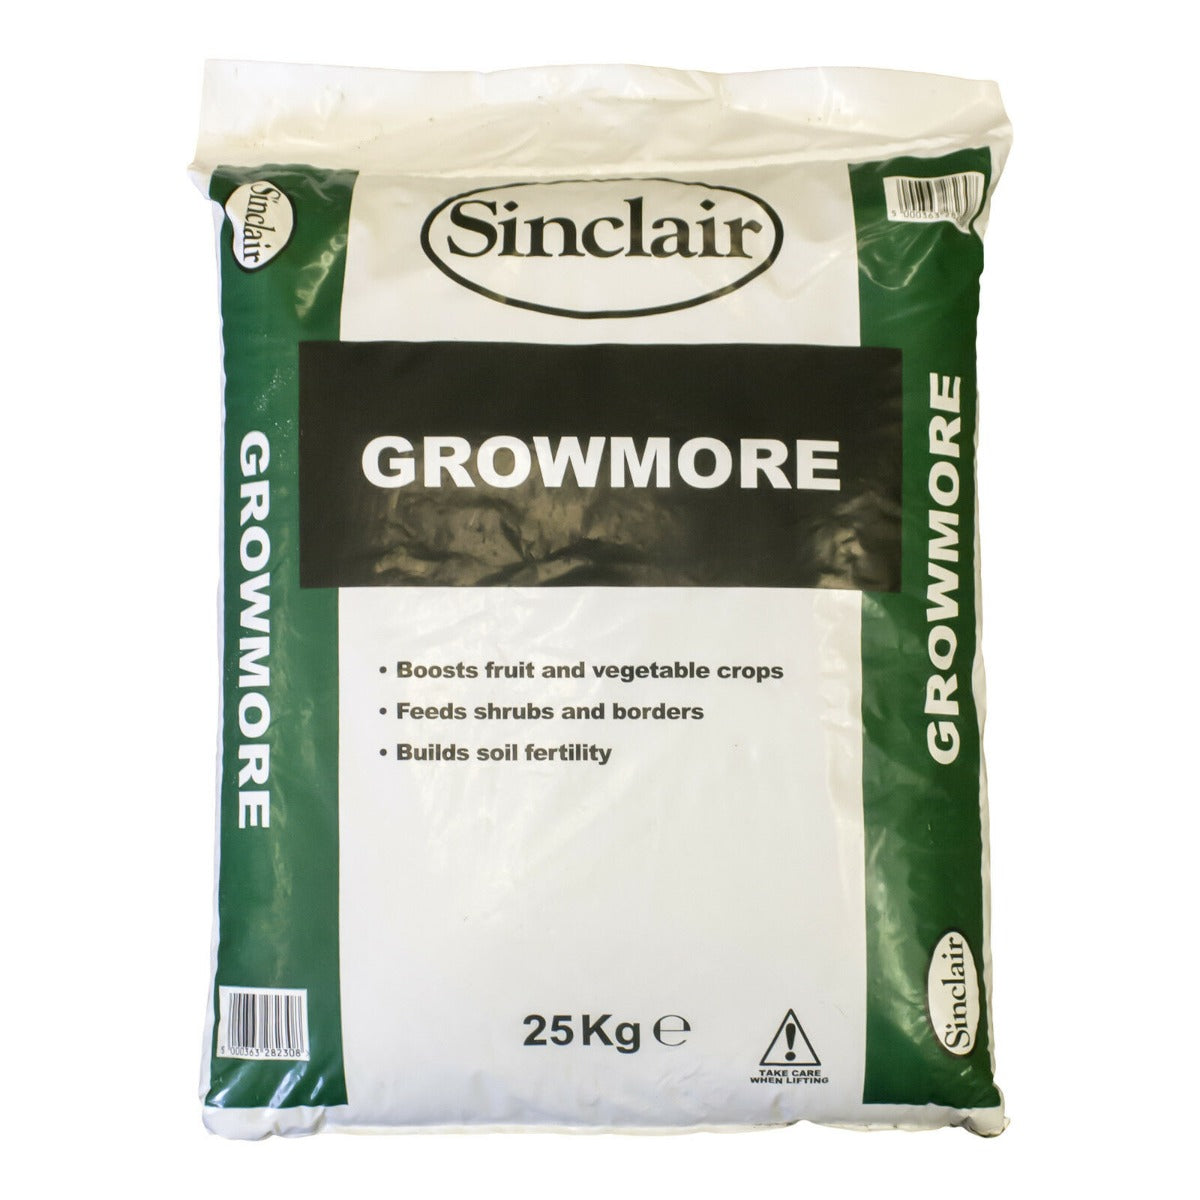 Sinclair Growmore Fertiliser Bag 25kg